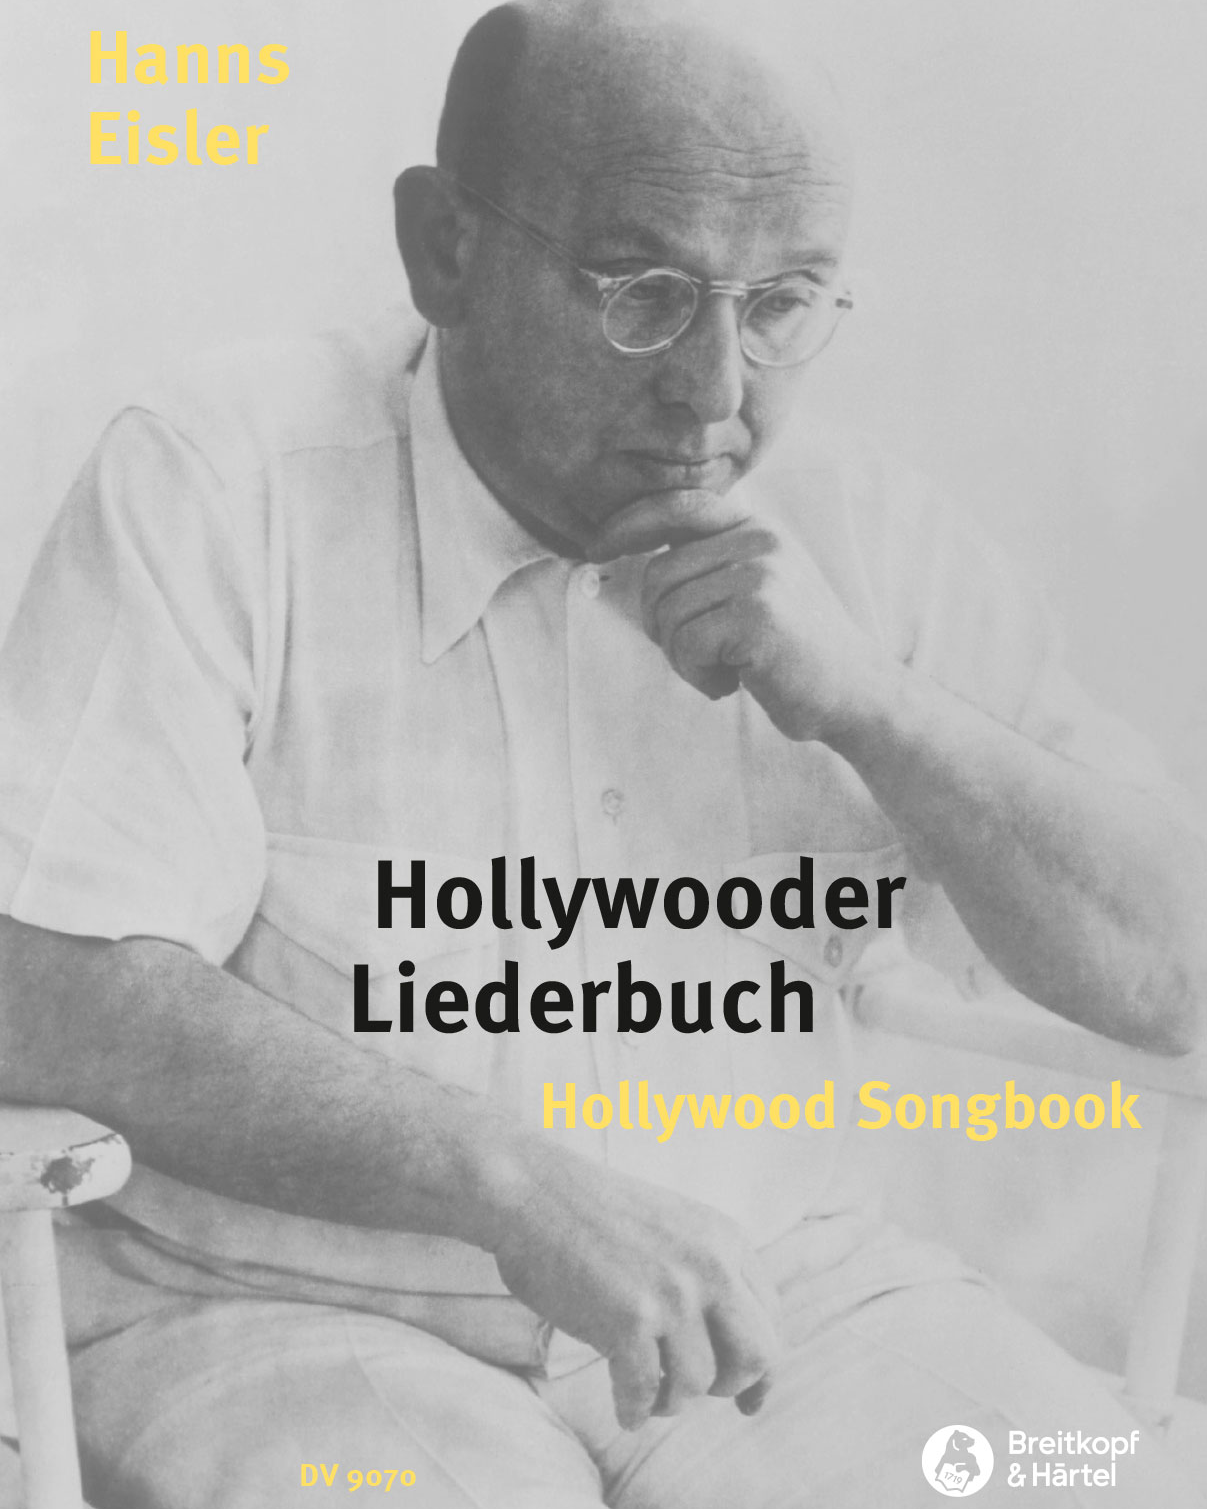 Hollywooder Liederbuch